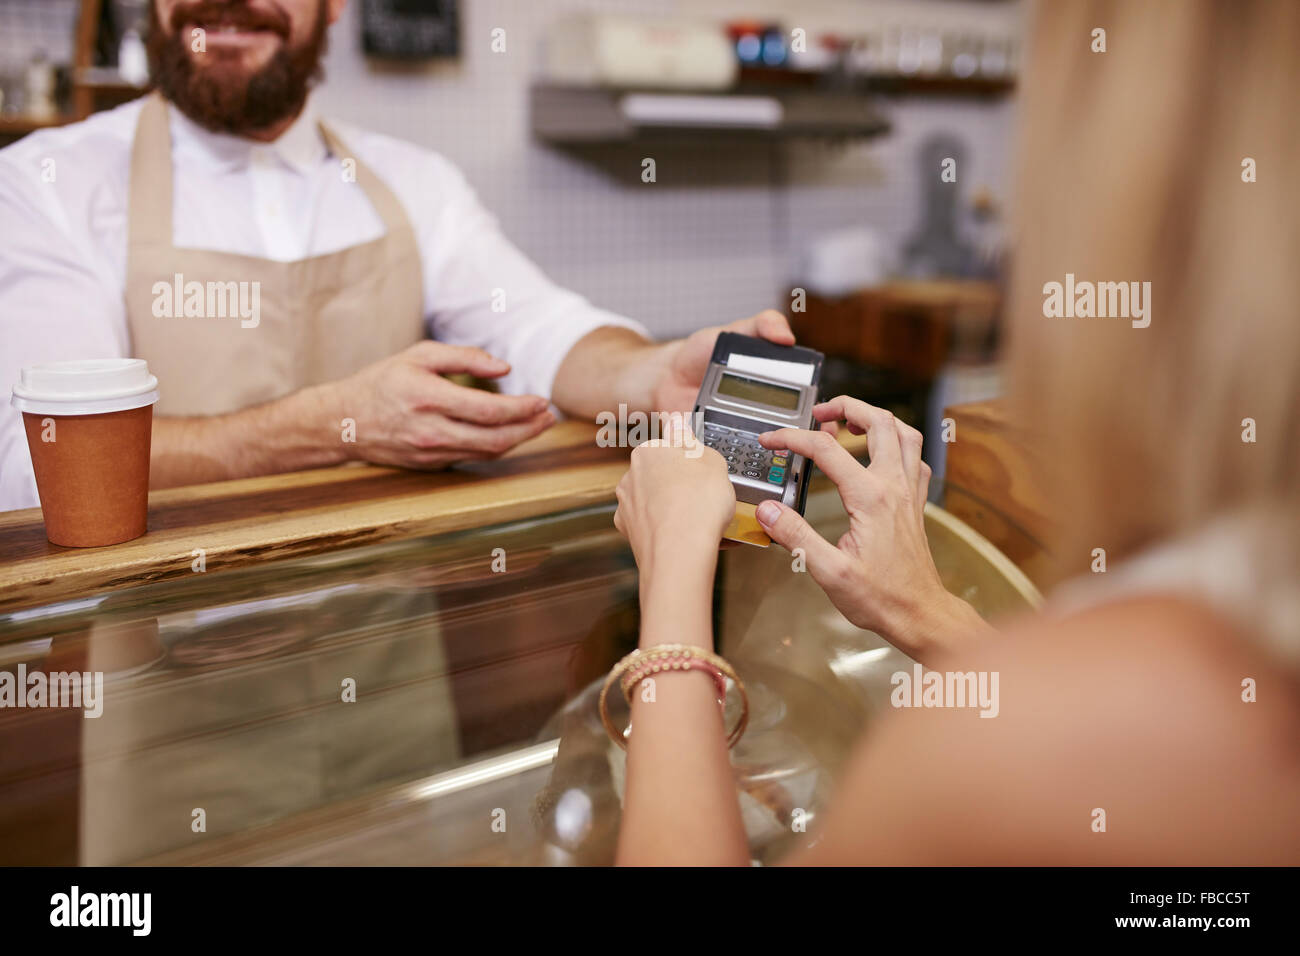 Mujer joven pagando con tarjeta de crédito de café en la cafetería. Centrarse en la mujer manos introducir PIN de seguridad en el lector de tarjeta de crédito. Foto de stock